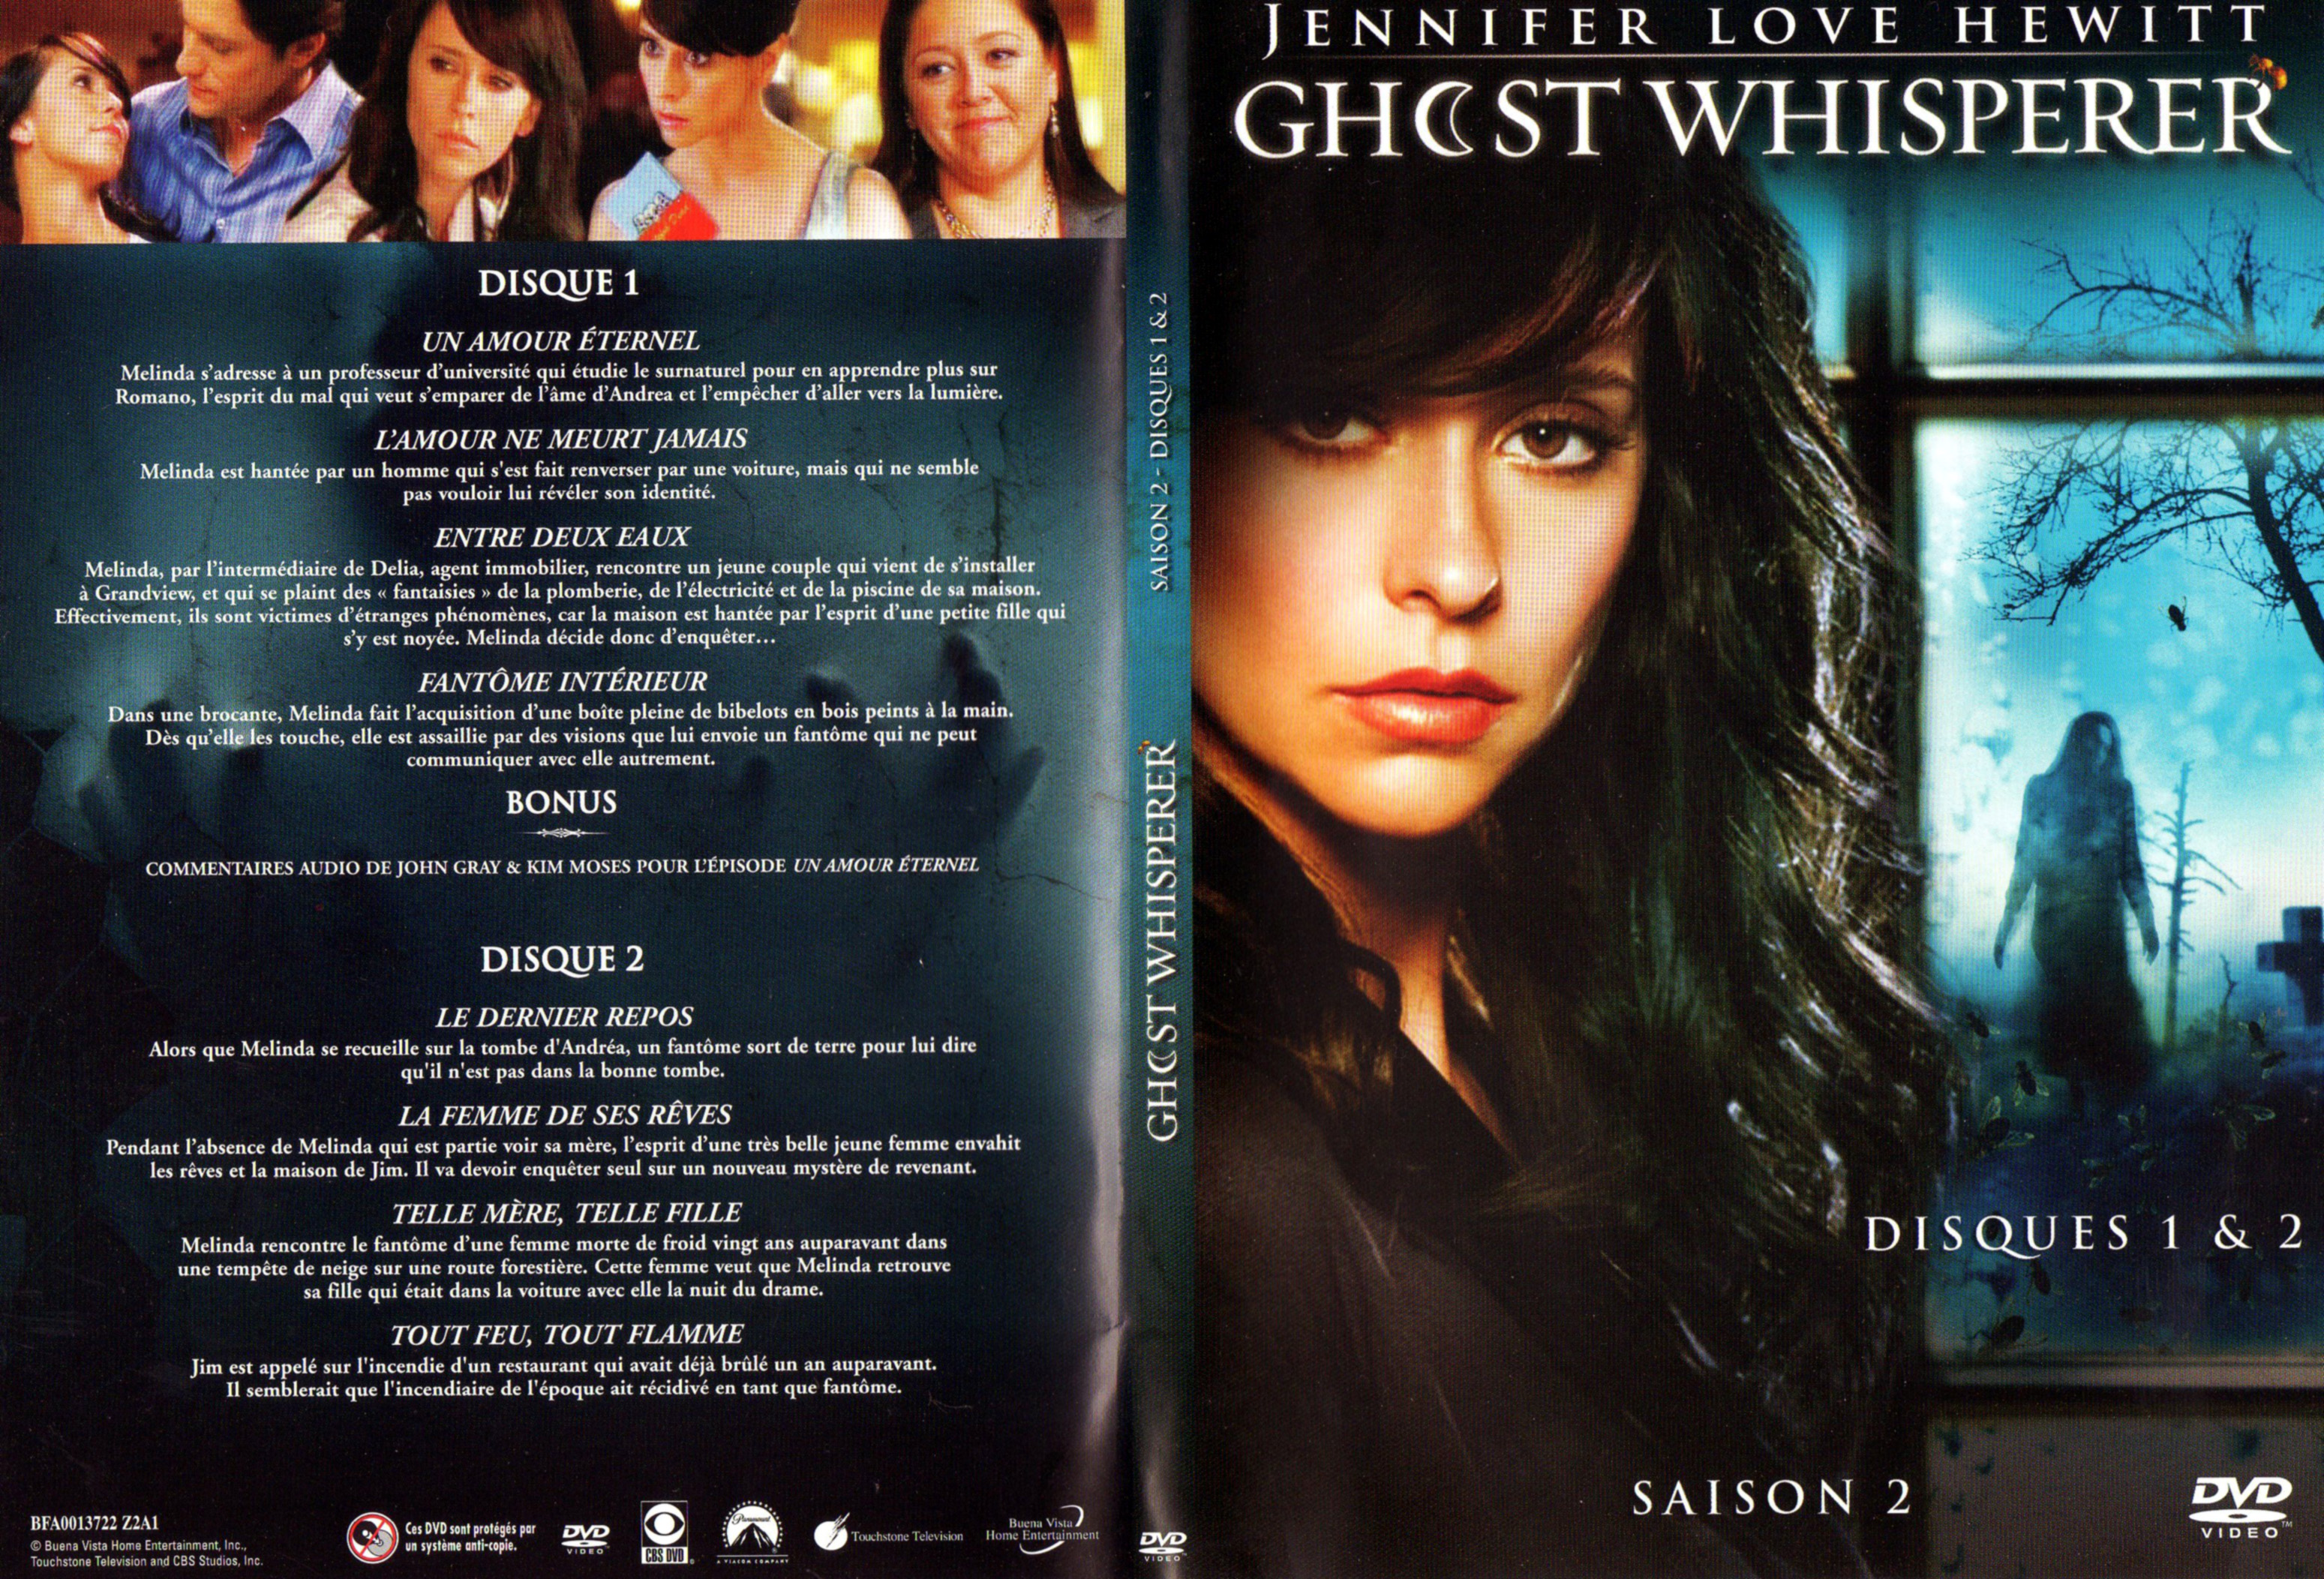 Jaquette DVD Ghost whisperer Saison 2 DVD 1